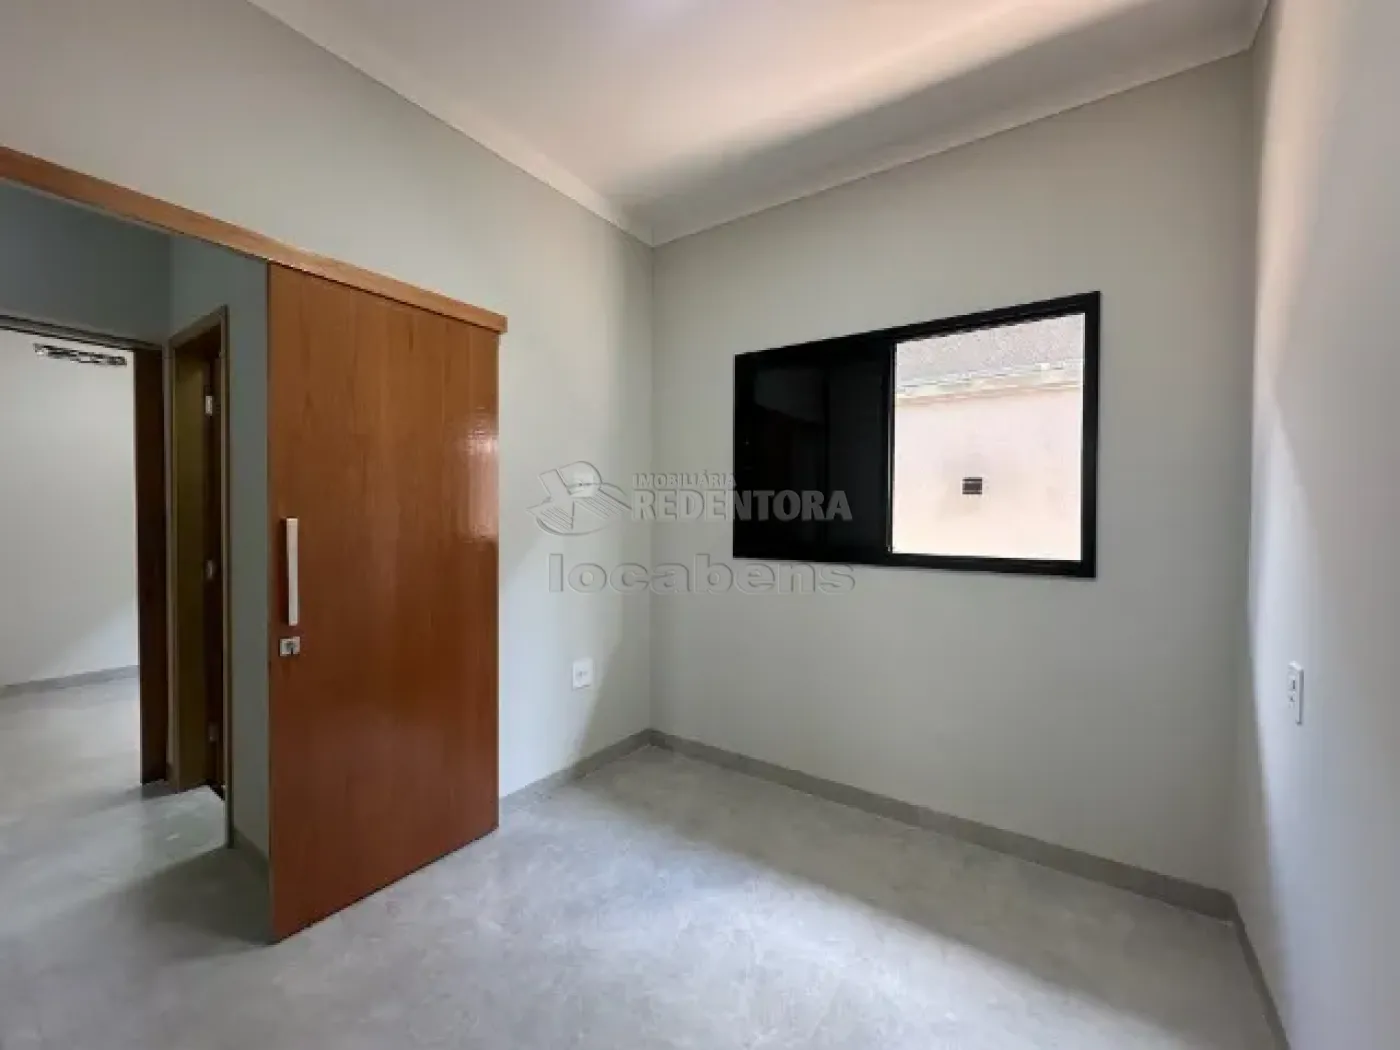 Comprar Casa / Condomínio em Mirassol apenas R$ 850.000,00 - Foto 11